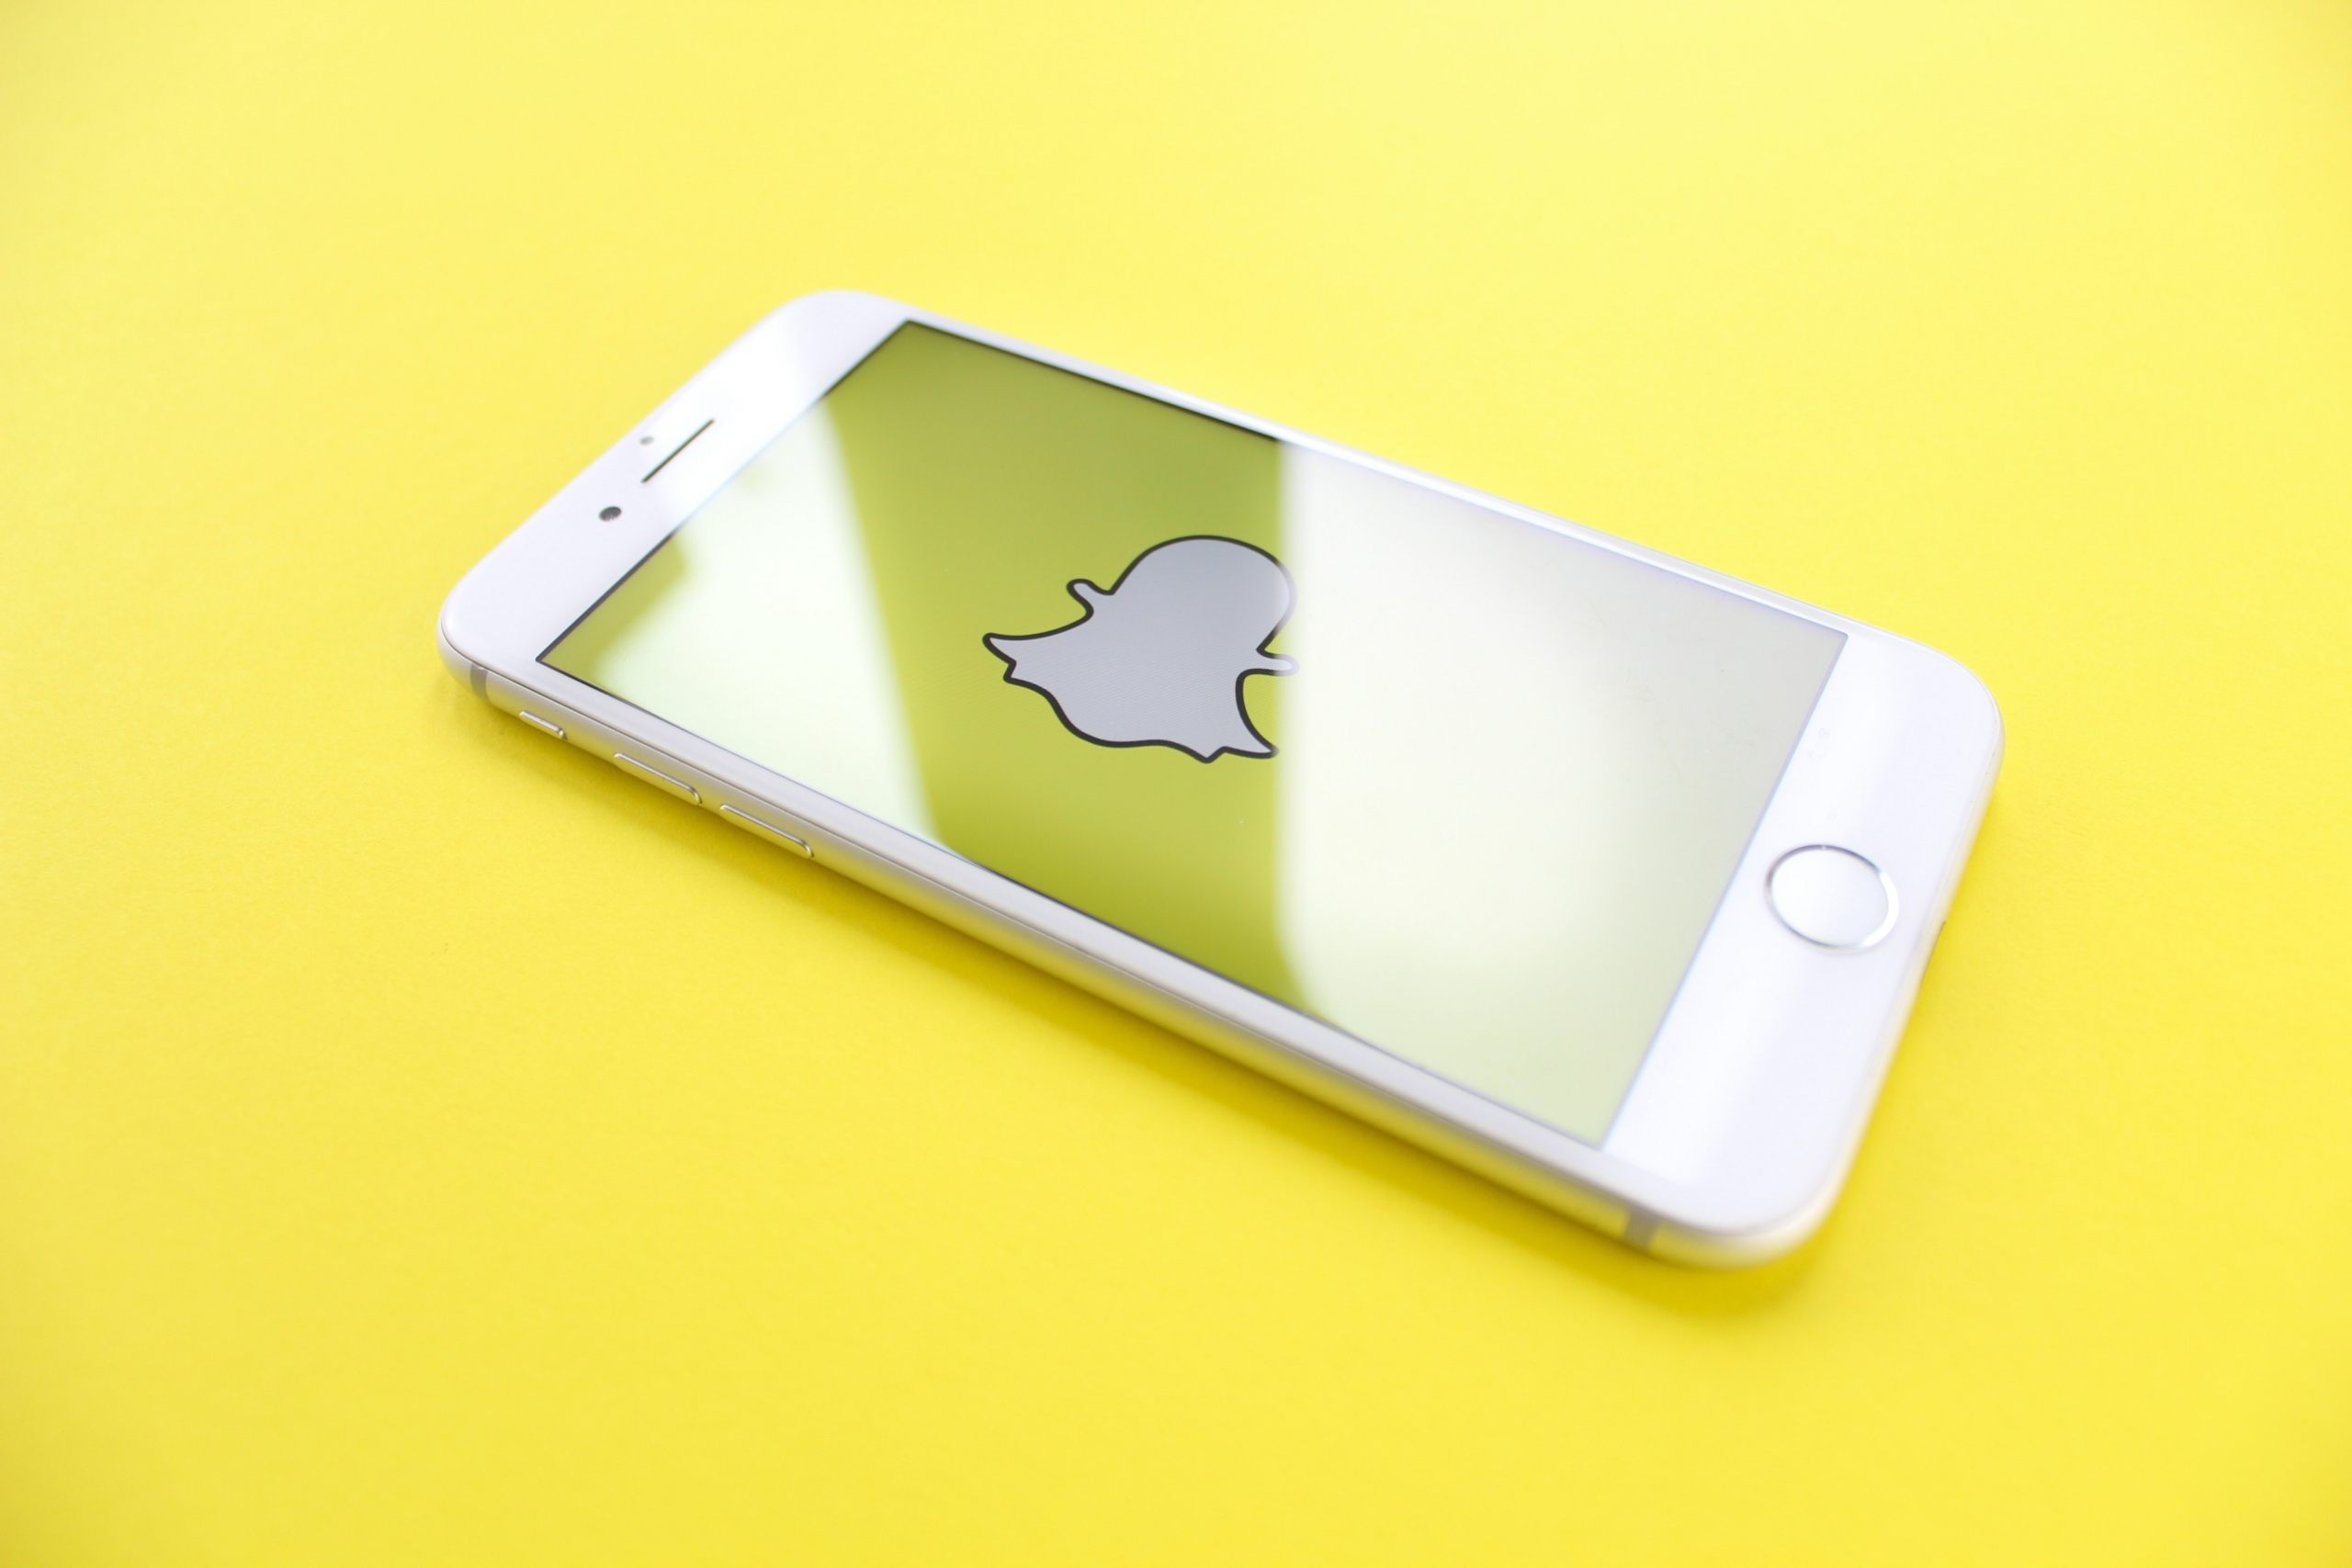 bitmoji-snapchat-yellow-smartphone